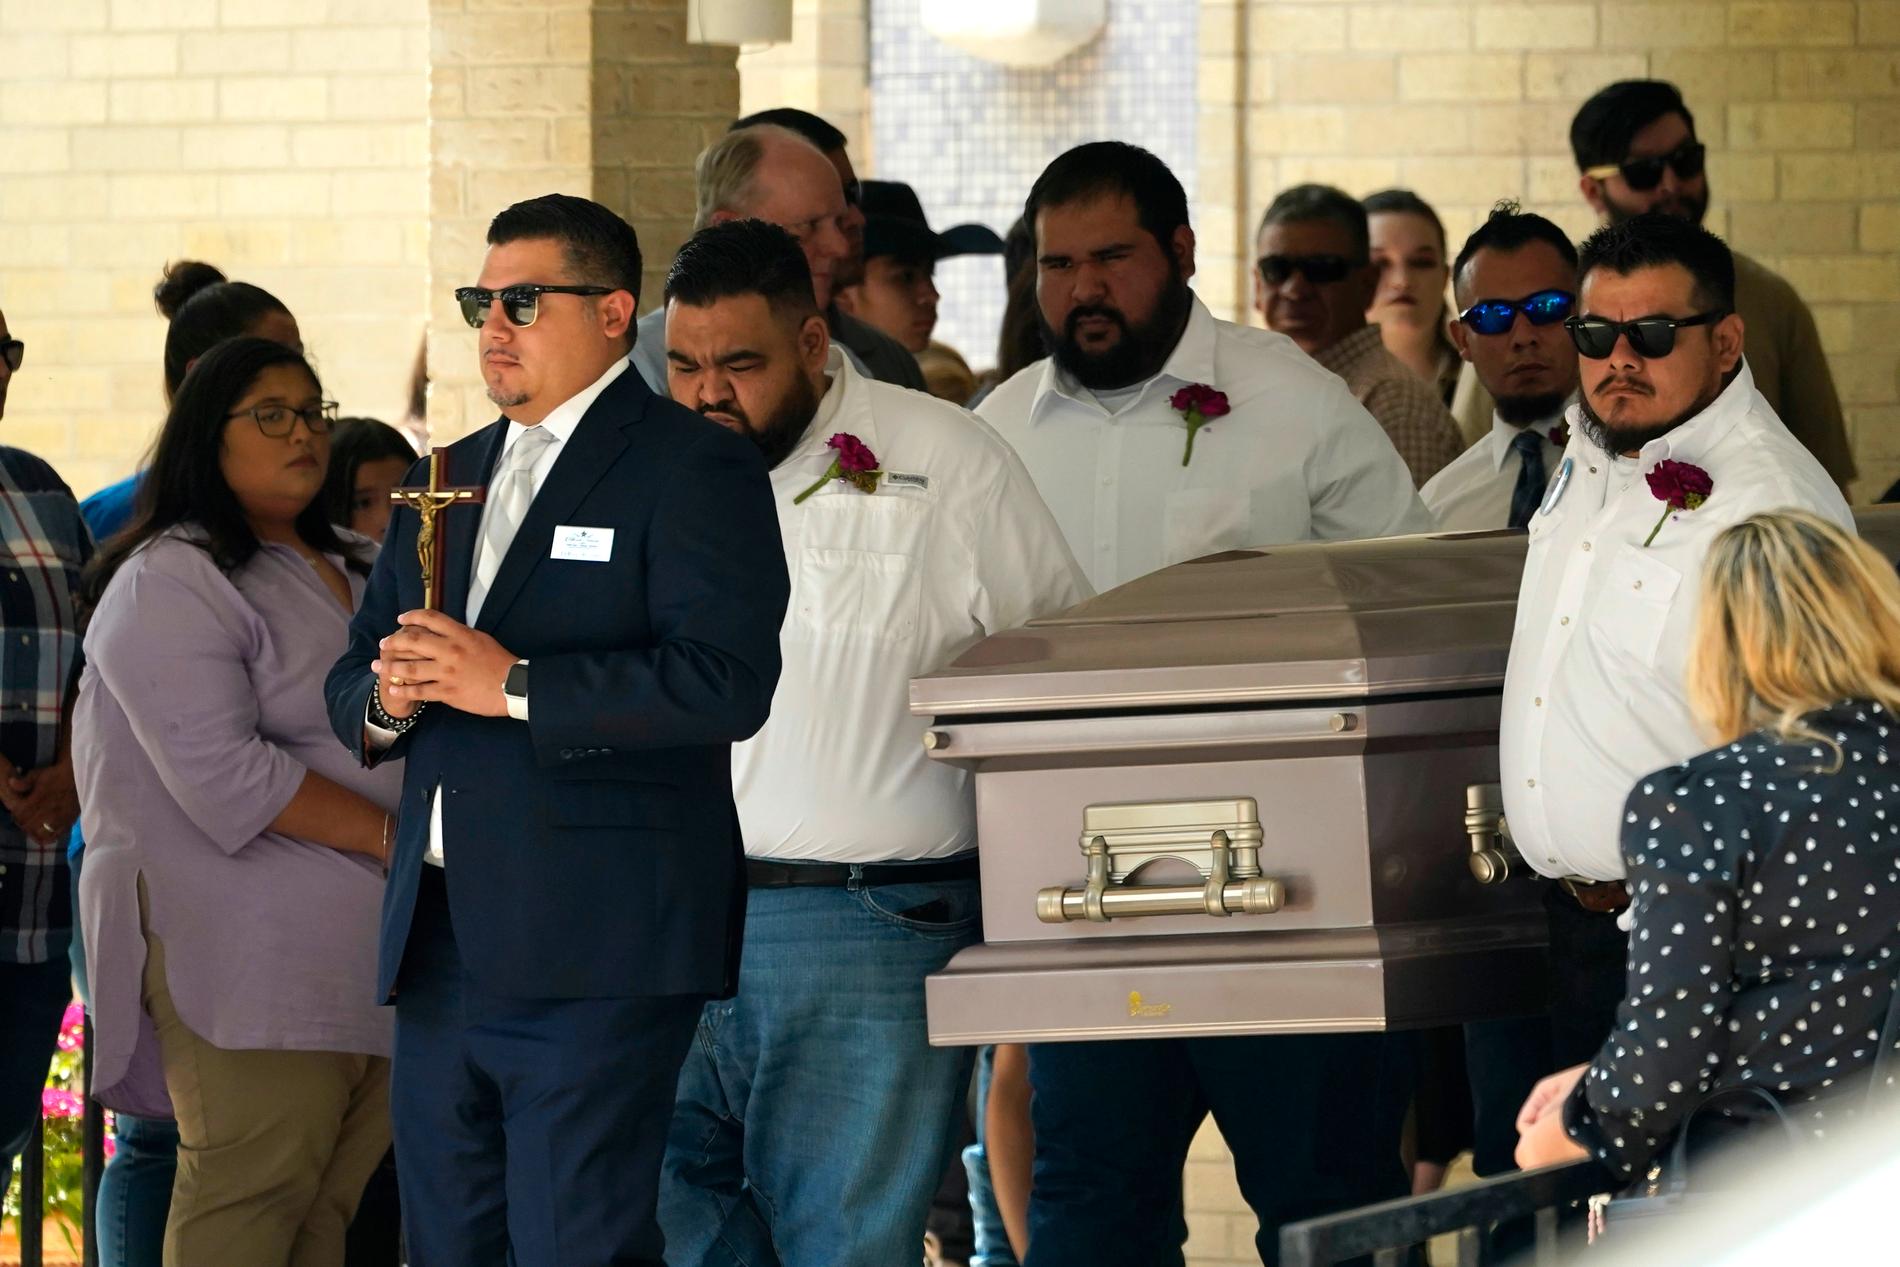 Tioåriga Amerie Jo Garza förs till sisat vilan efter att ha blivit mördad på sin skola i Uvalde, Texas. Hon hade just fått en mobiltelefon och ska ha försökt larma polisen. 